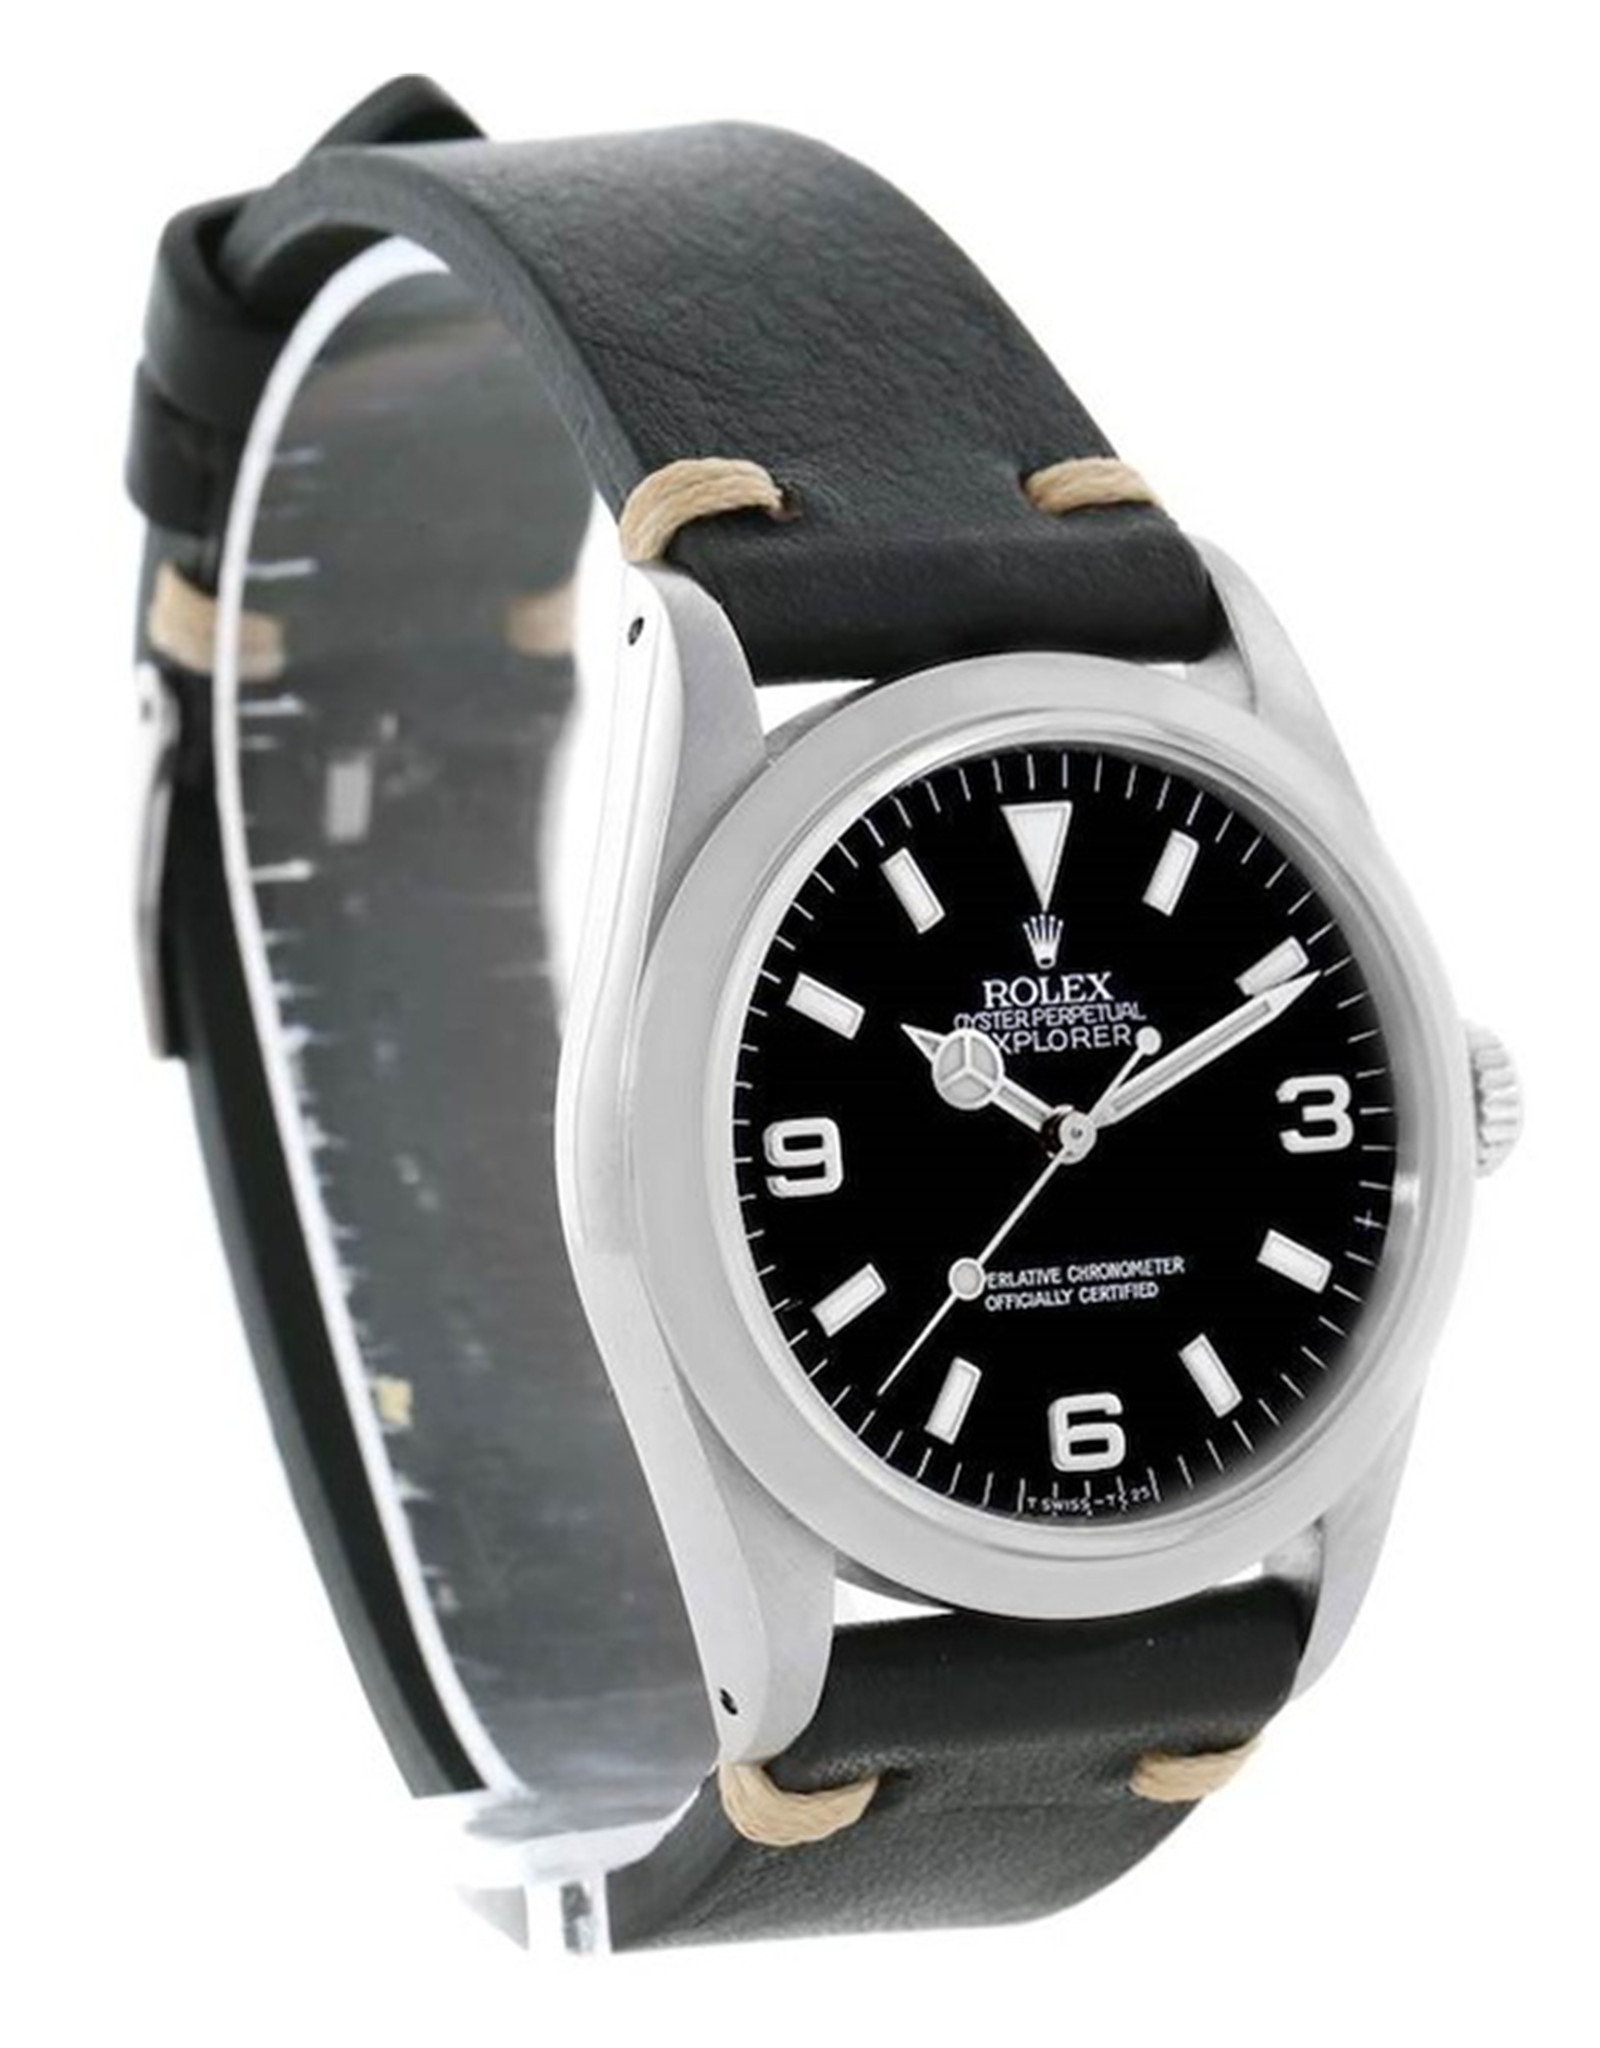 Replica Rolex Explorer I Herren Stahl schwarzer Lederschalt Replica Uhren 14270 36mm